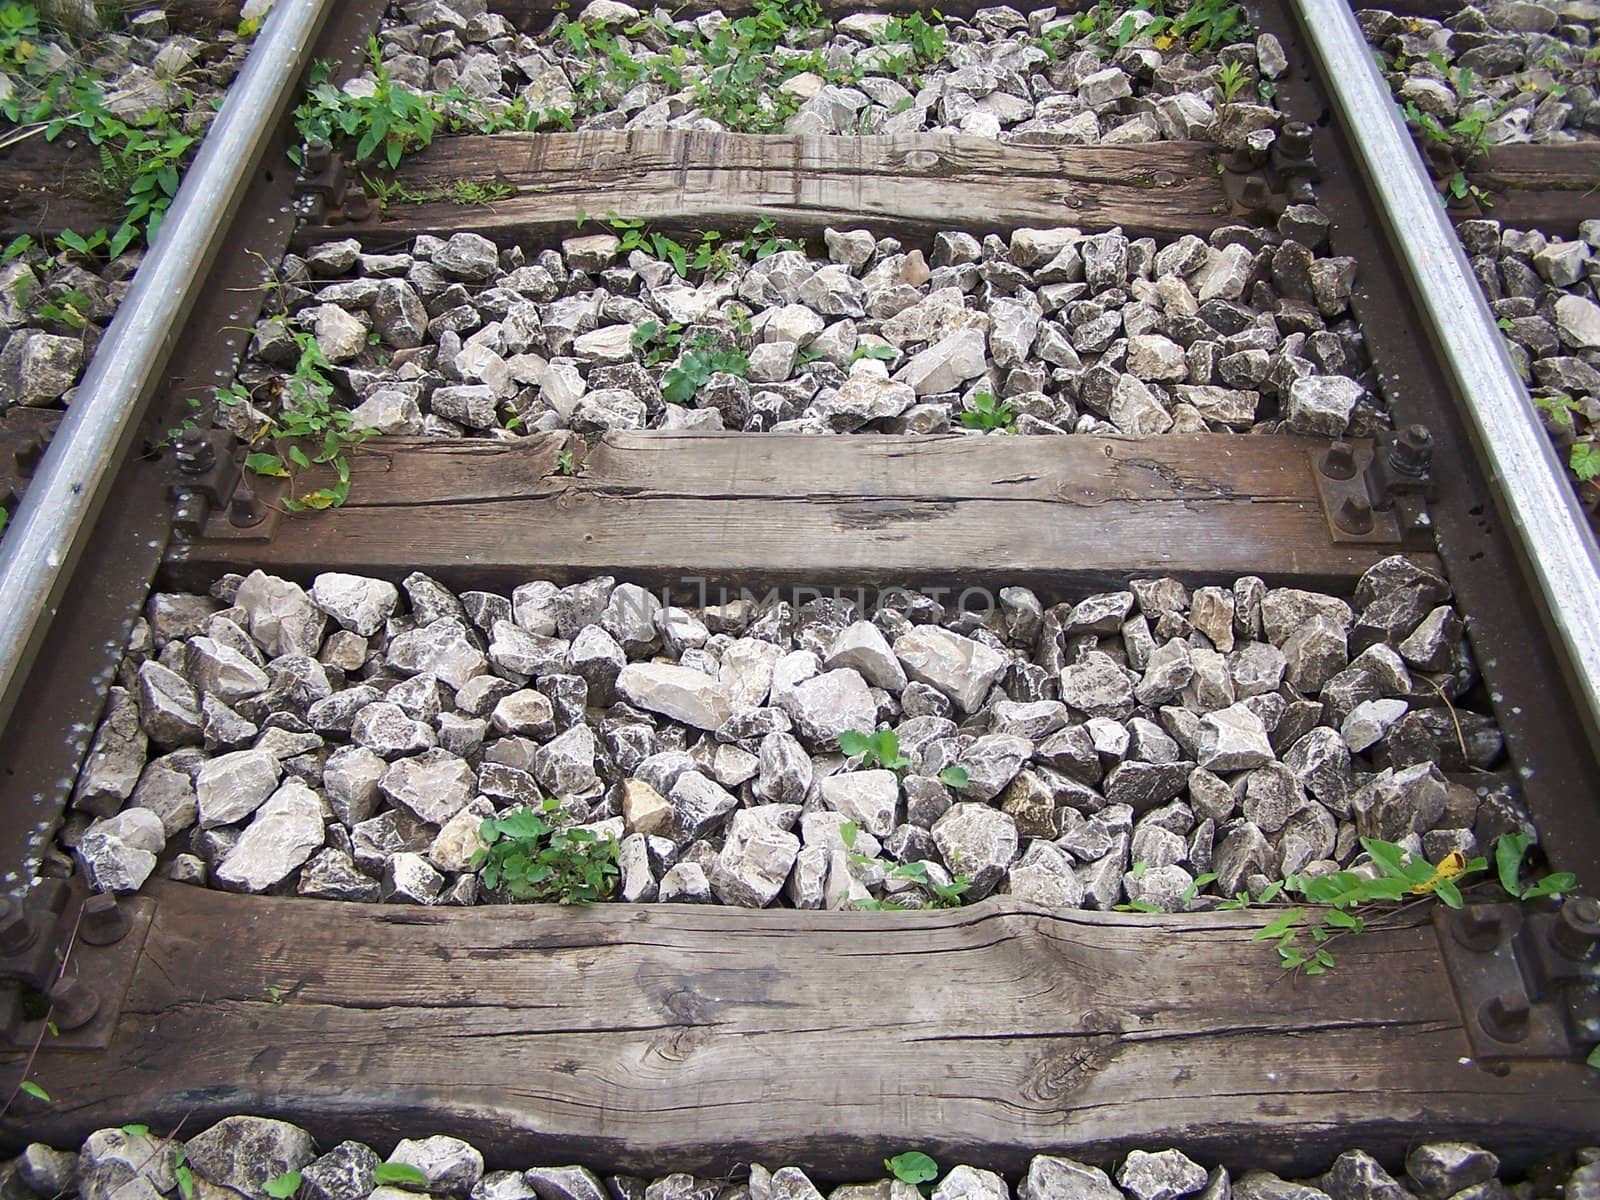 rail tracks